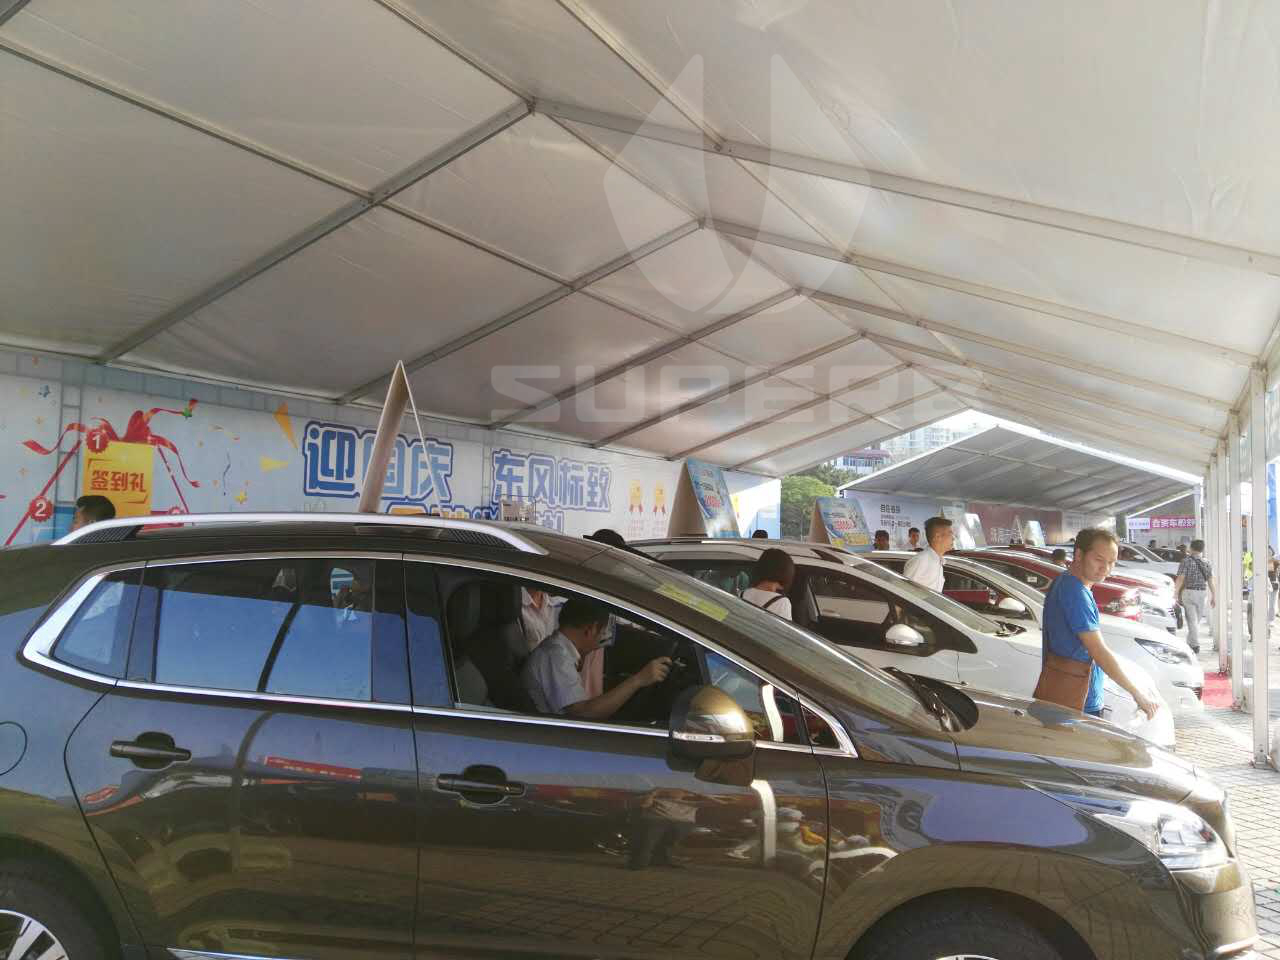 Car Show Exhibition Tents